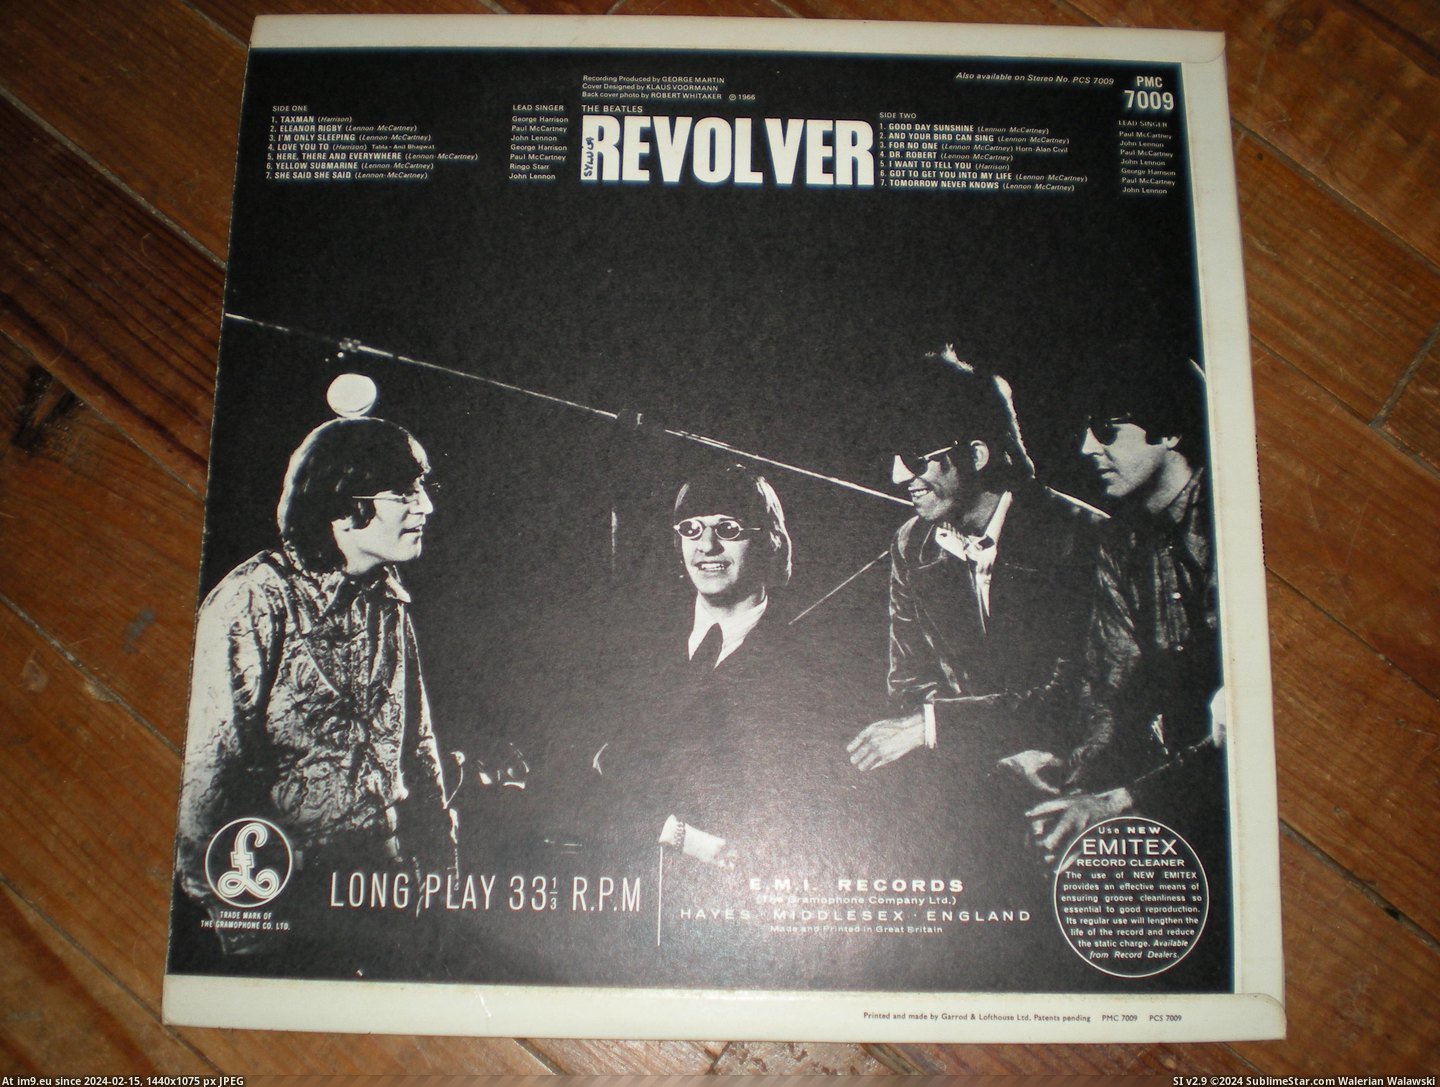  #Revolver  Revolver -2-3 7 Pic. (Bild von album new 1))